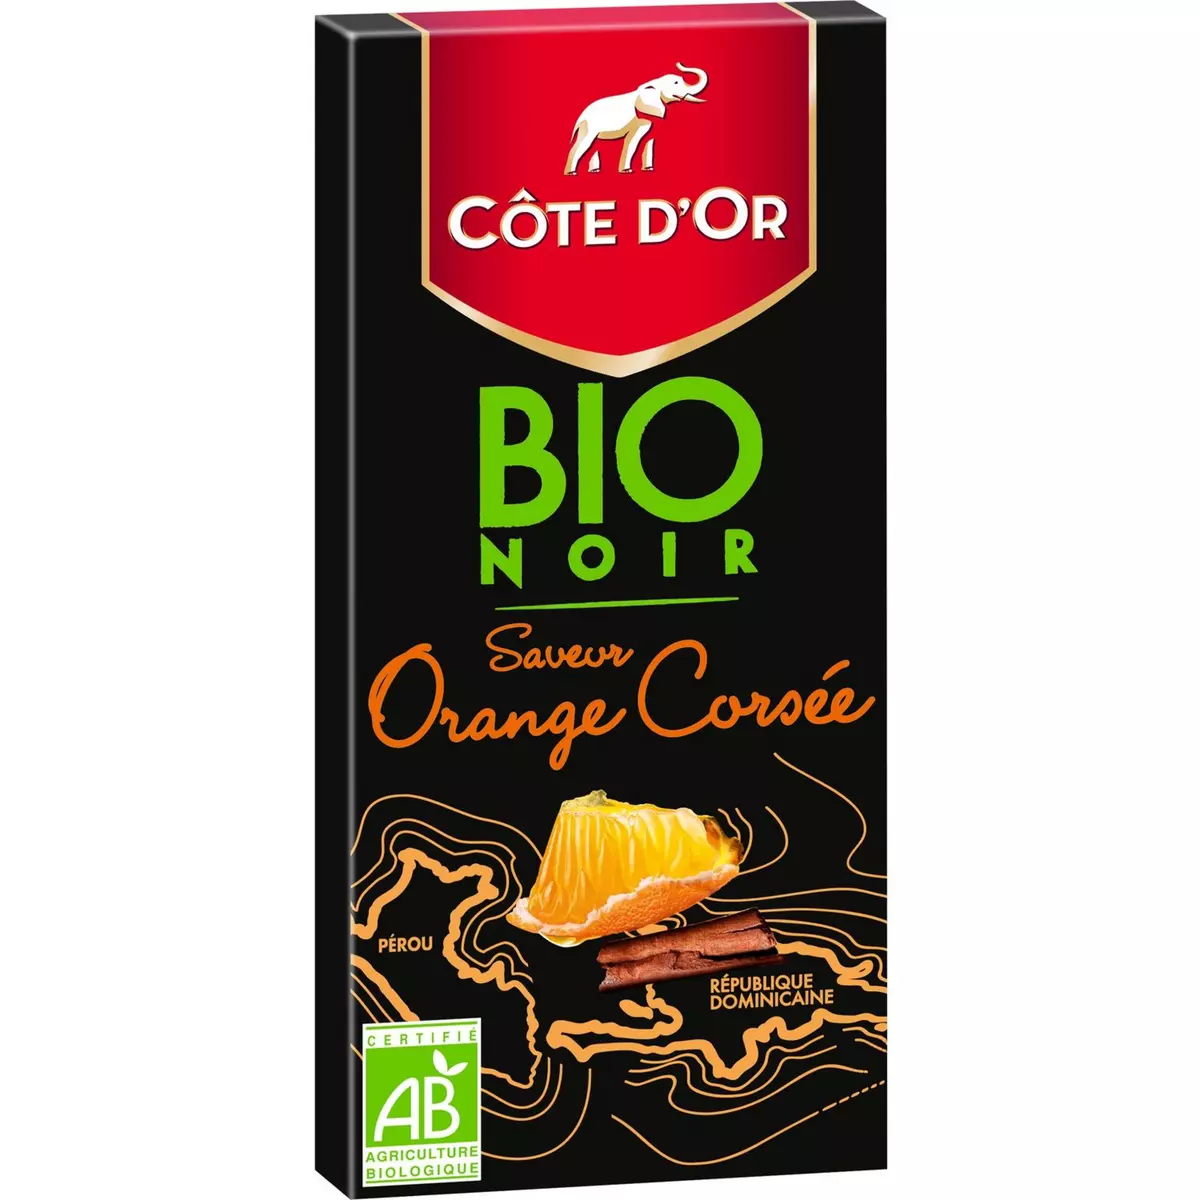 COTE D'OR Tablette de chocolat noir bio saveur orange corsée 1 pièce 90g